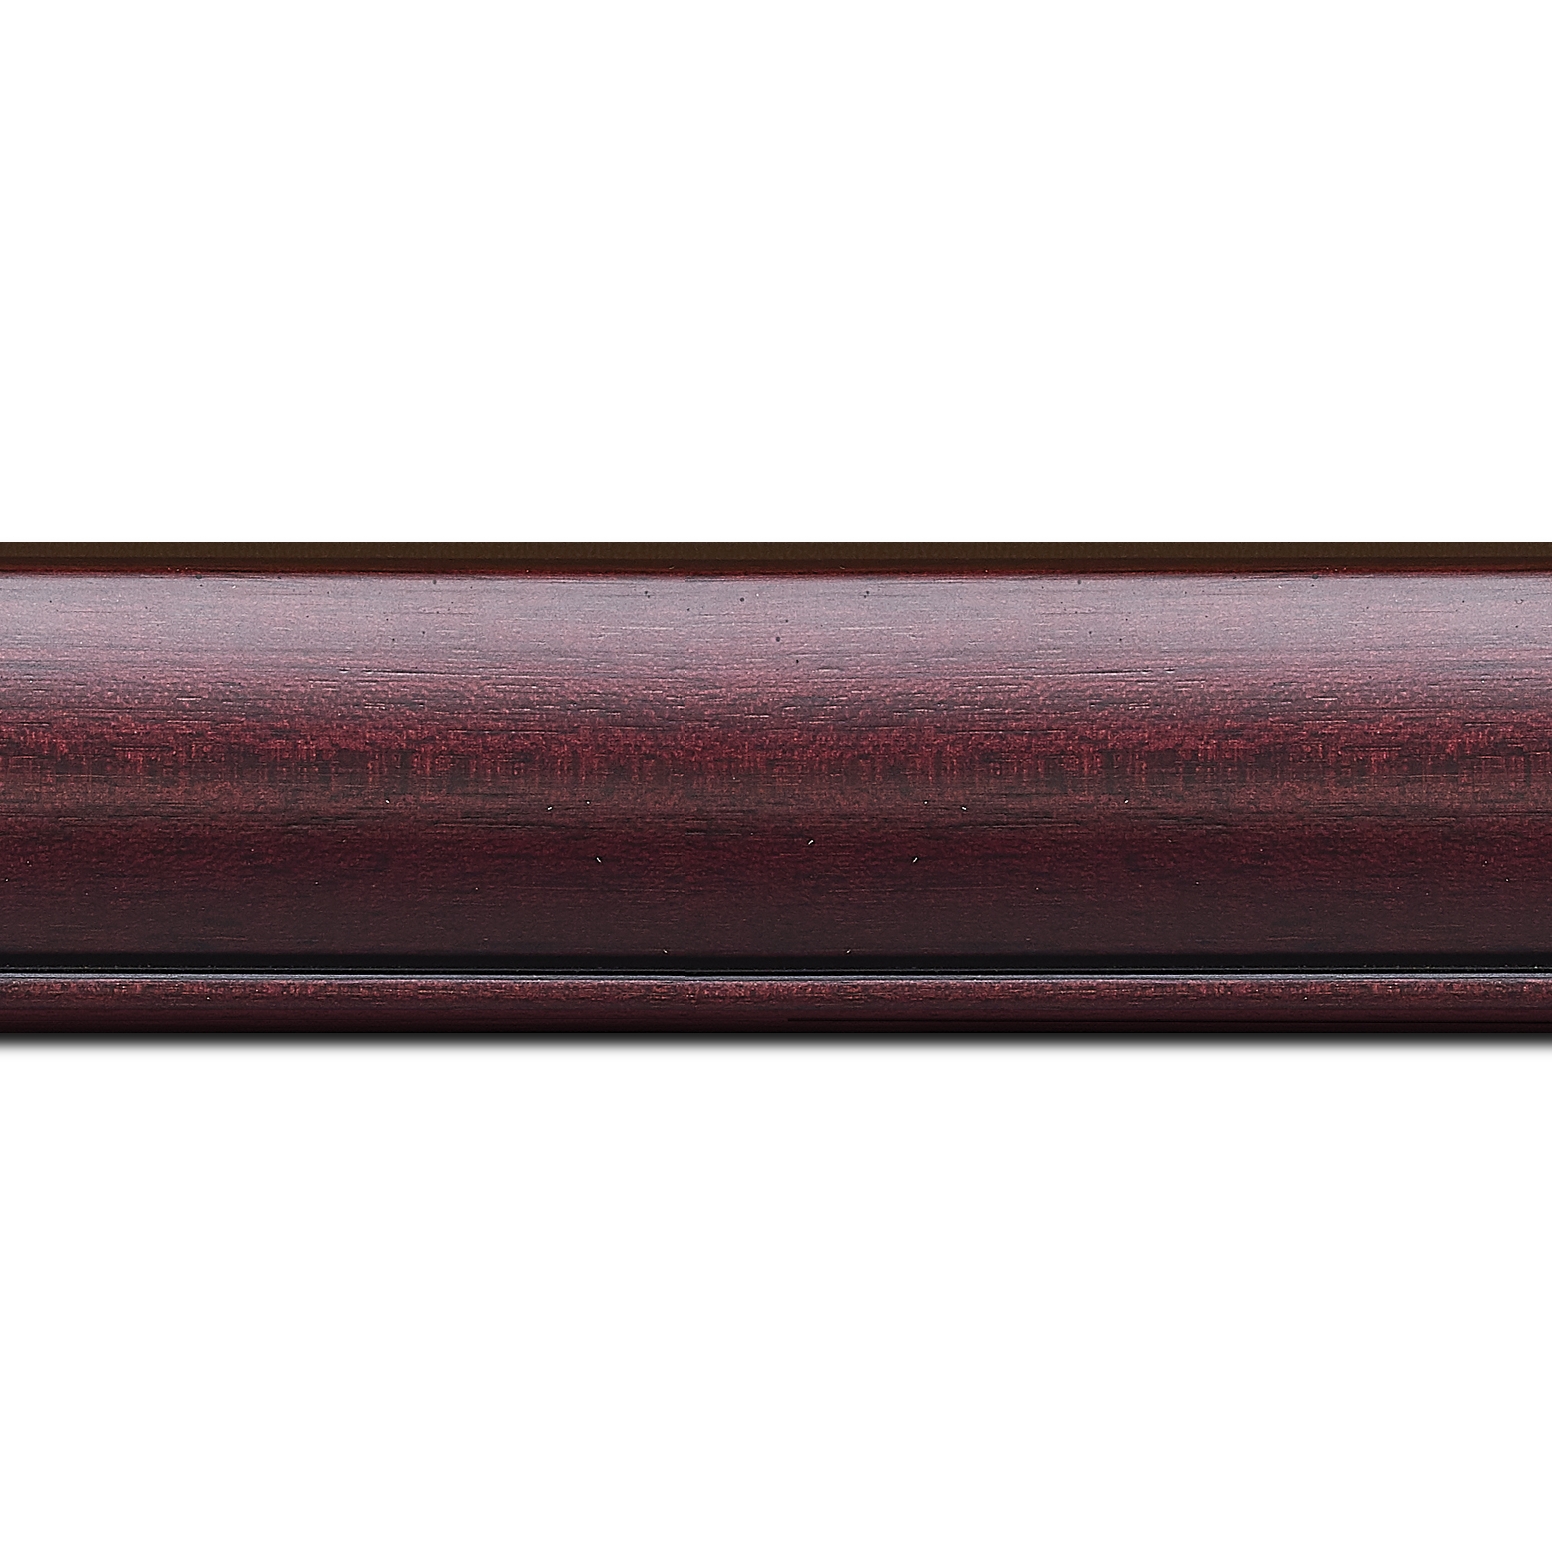 Baguette longueur 1.40m bois profil arrondi largeur 4.7cm couleur bordeaux lie de vin satiné rehaussé d'un filet noir